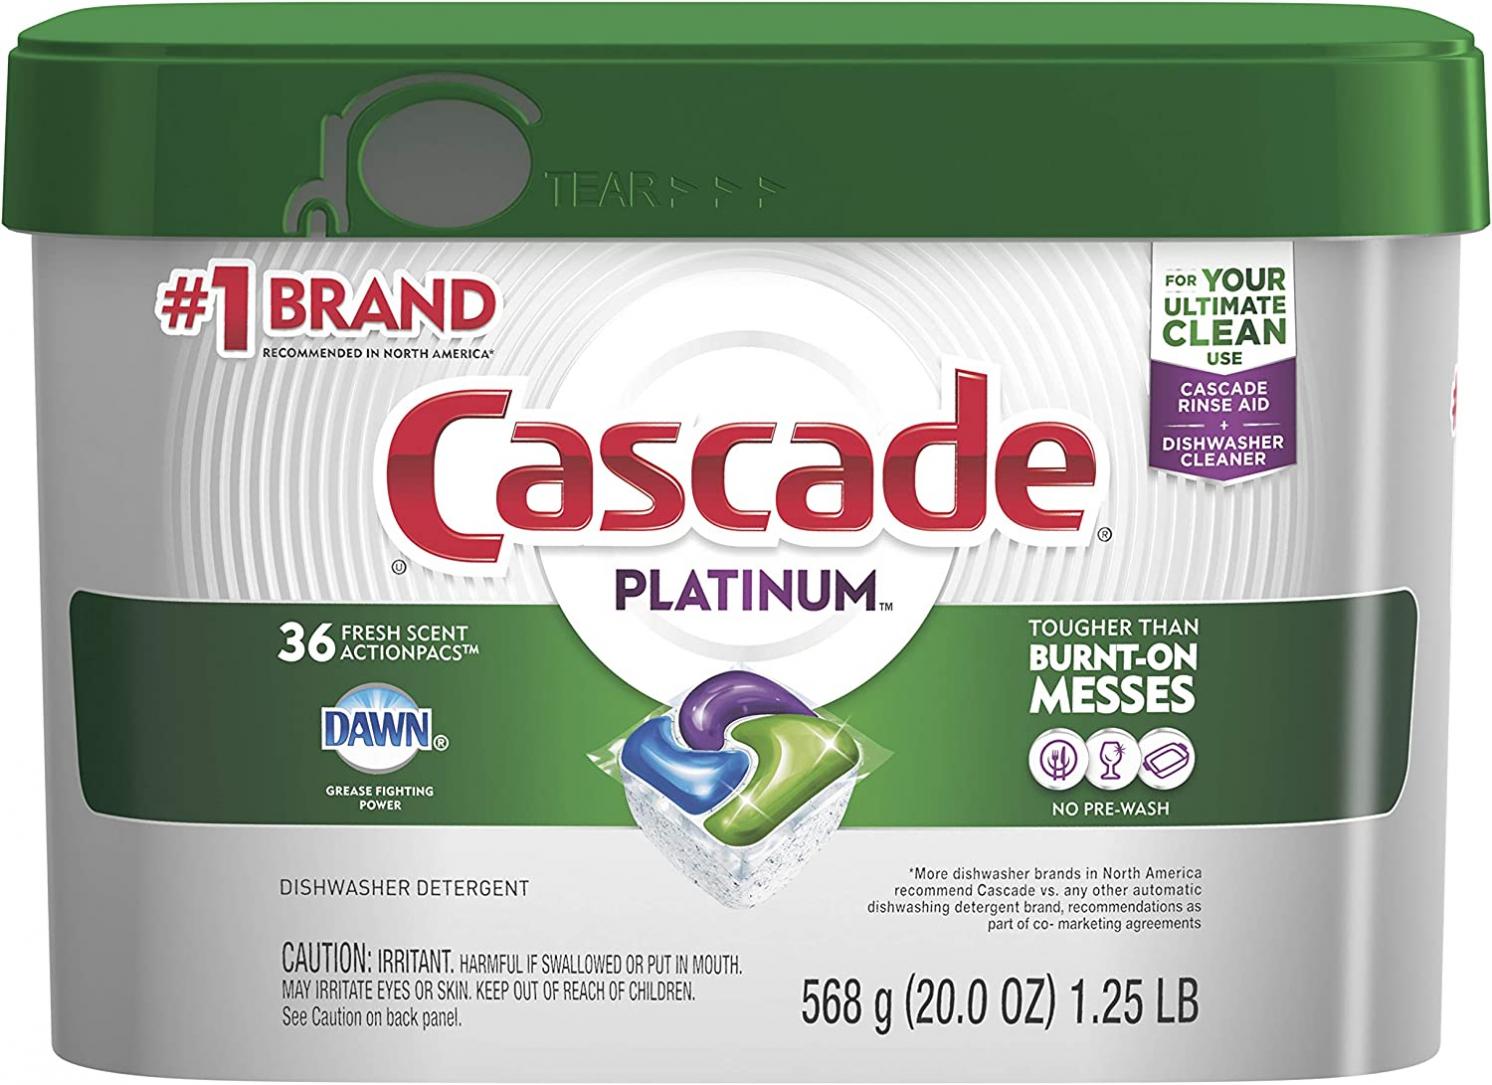 Cascade Platinum Dishwasher Pods, ActionPacs Dishwasher Detergent with Dishwasher Cleaner Action, Fresh Scent, 36 count